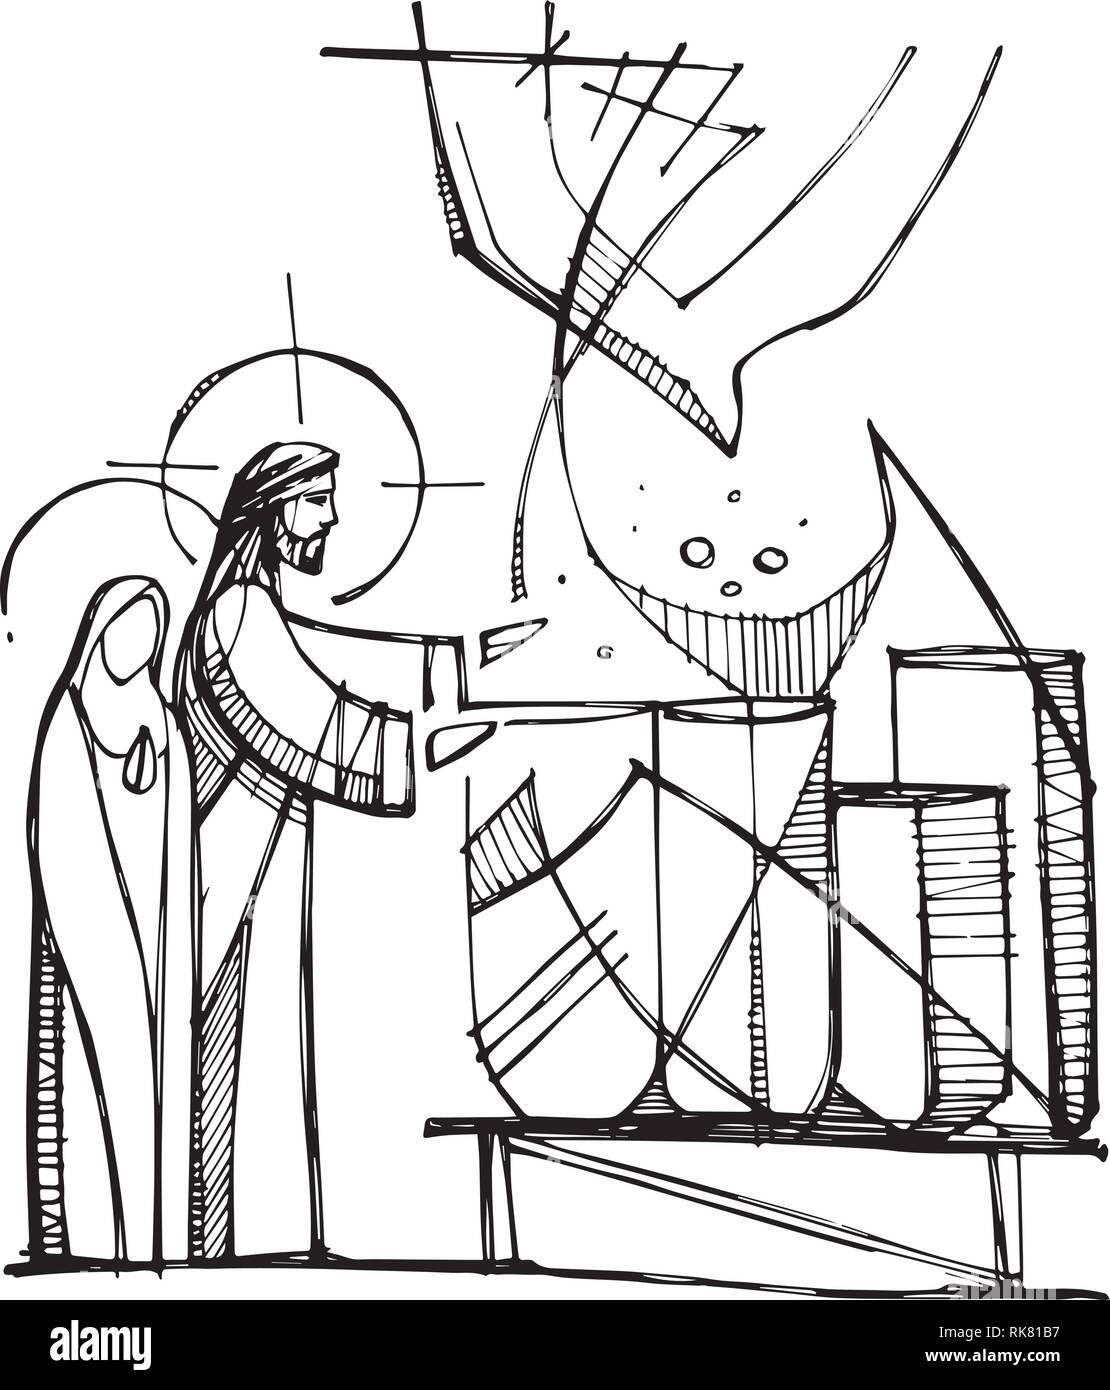 Illustrazione Vettoriale o di disegno della Vergine Maria e Gesù Cristo rendendo il miracolo di trasformare l'acqua al vino Illustrazione Vettoriale